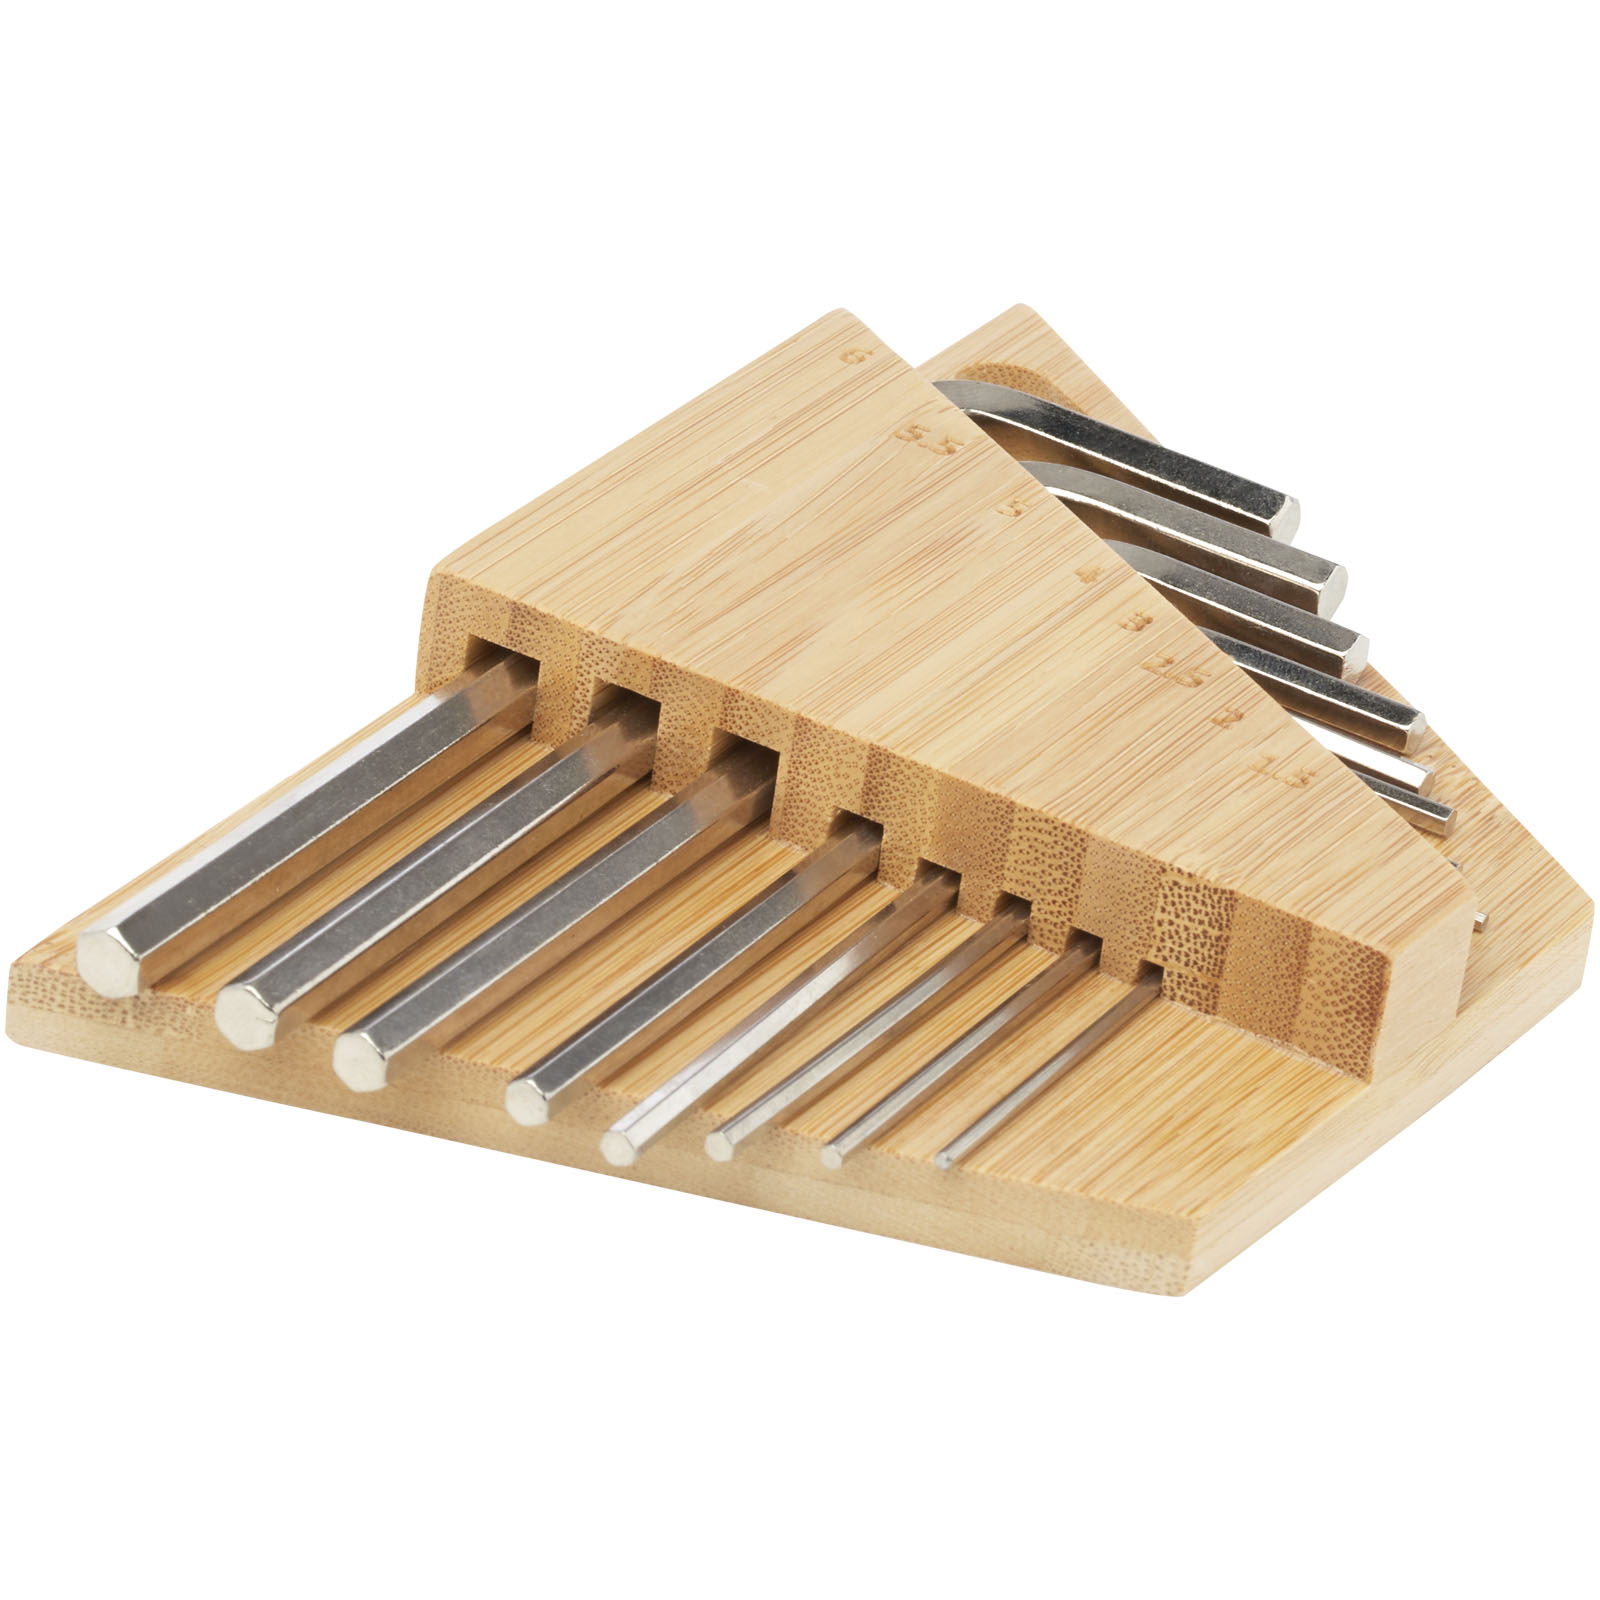 Tool sets - Allen bamboo hex key tool set